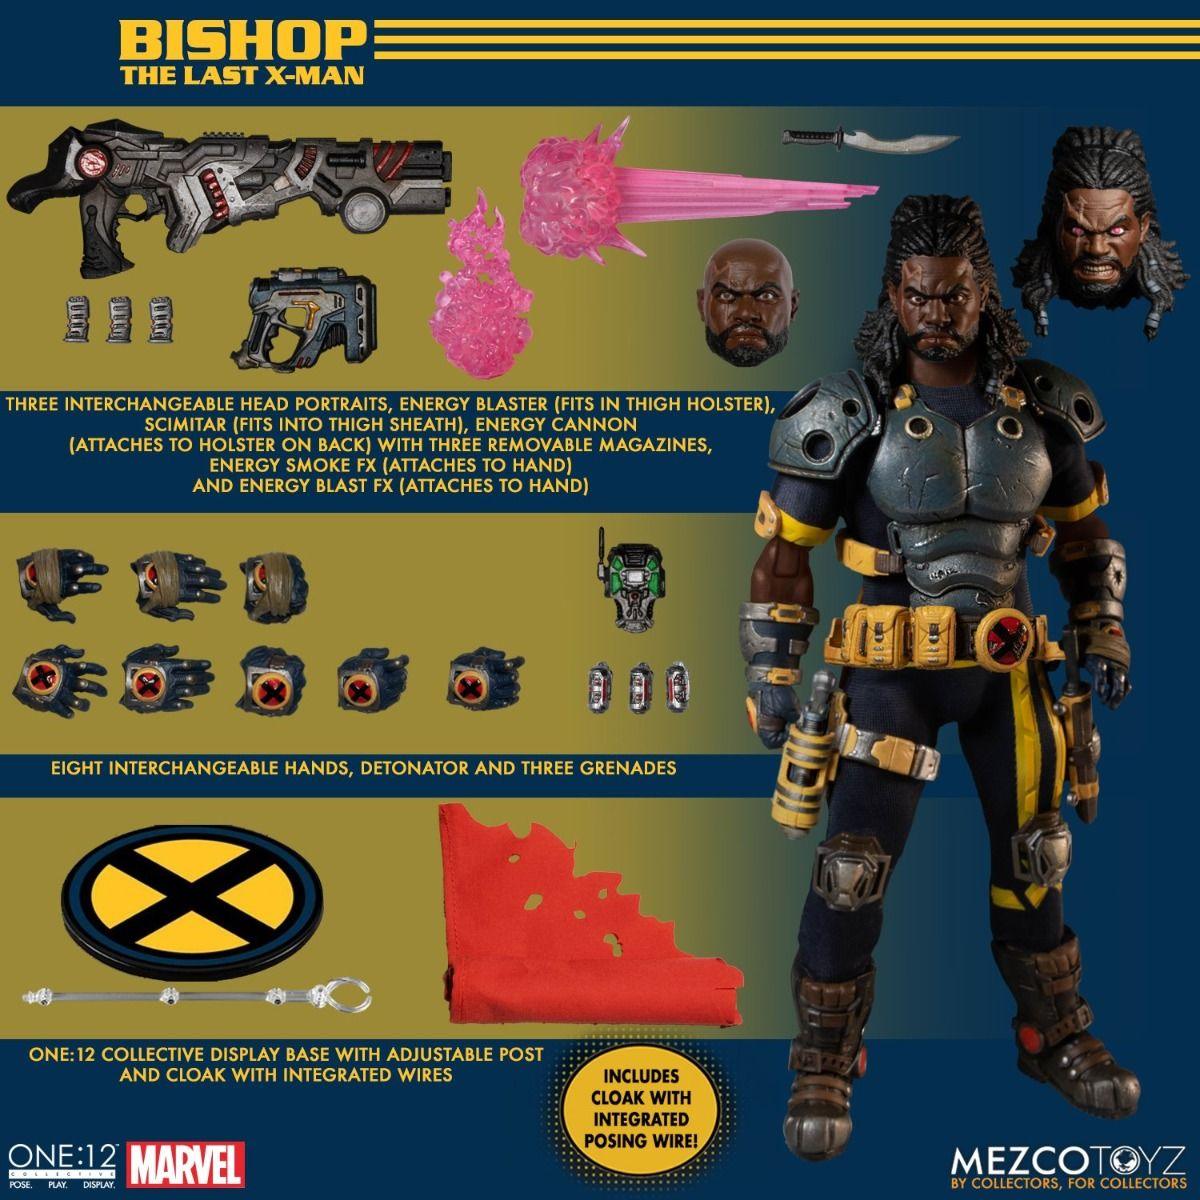 MEZ77286 Marvel Comics - Bishop One:12 Collective Action Figure - Mezco Toyz - Titan Pop Culture